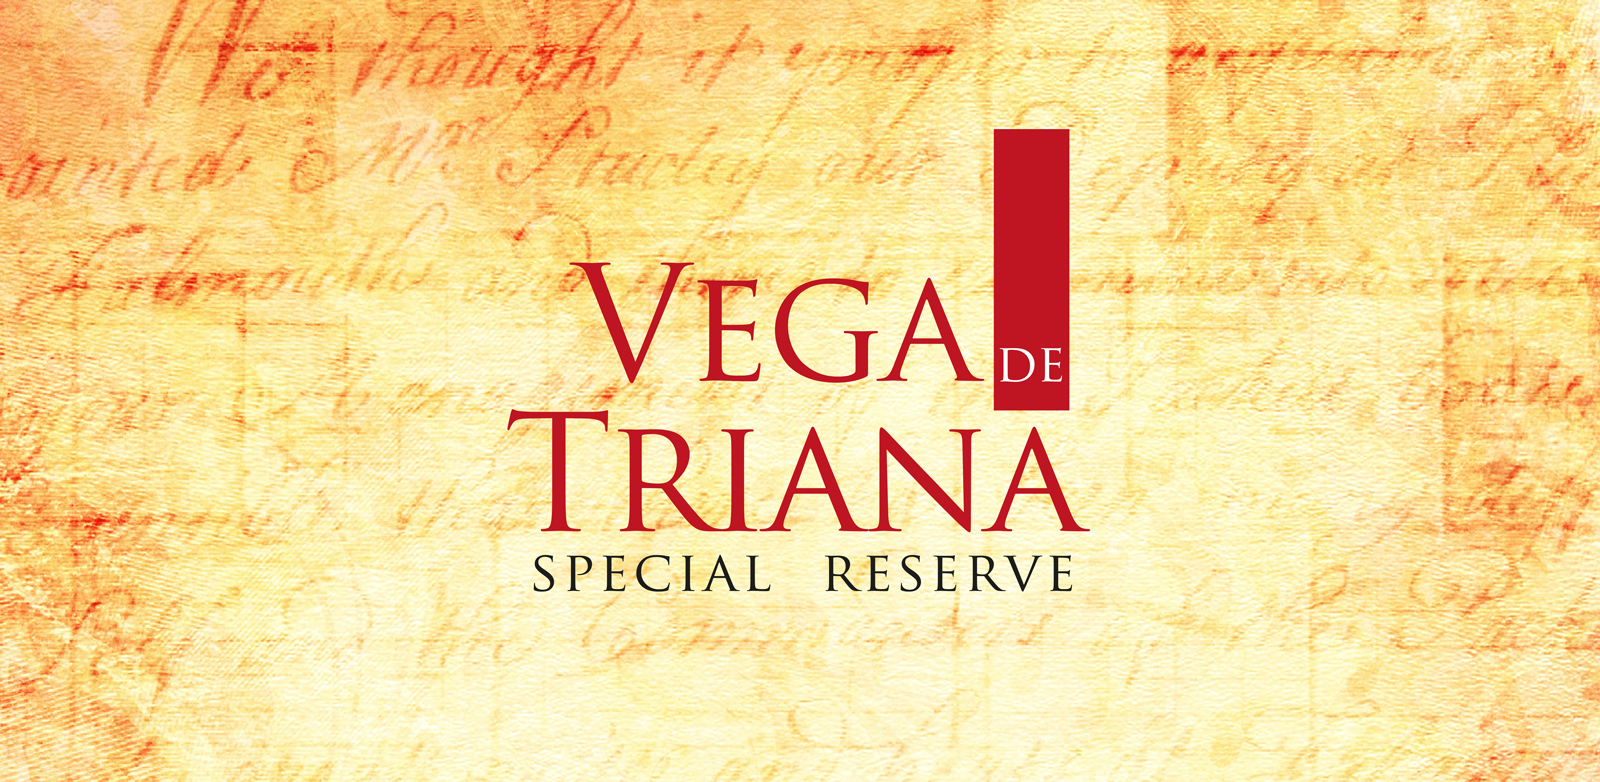 Diseño de marca y logo creativo paraaceite de oliva virgen extra Vega de Triana